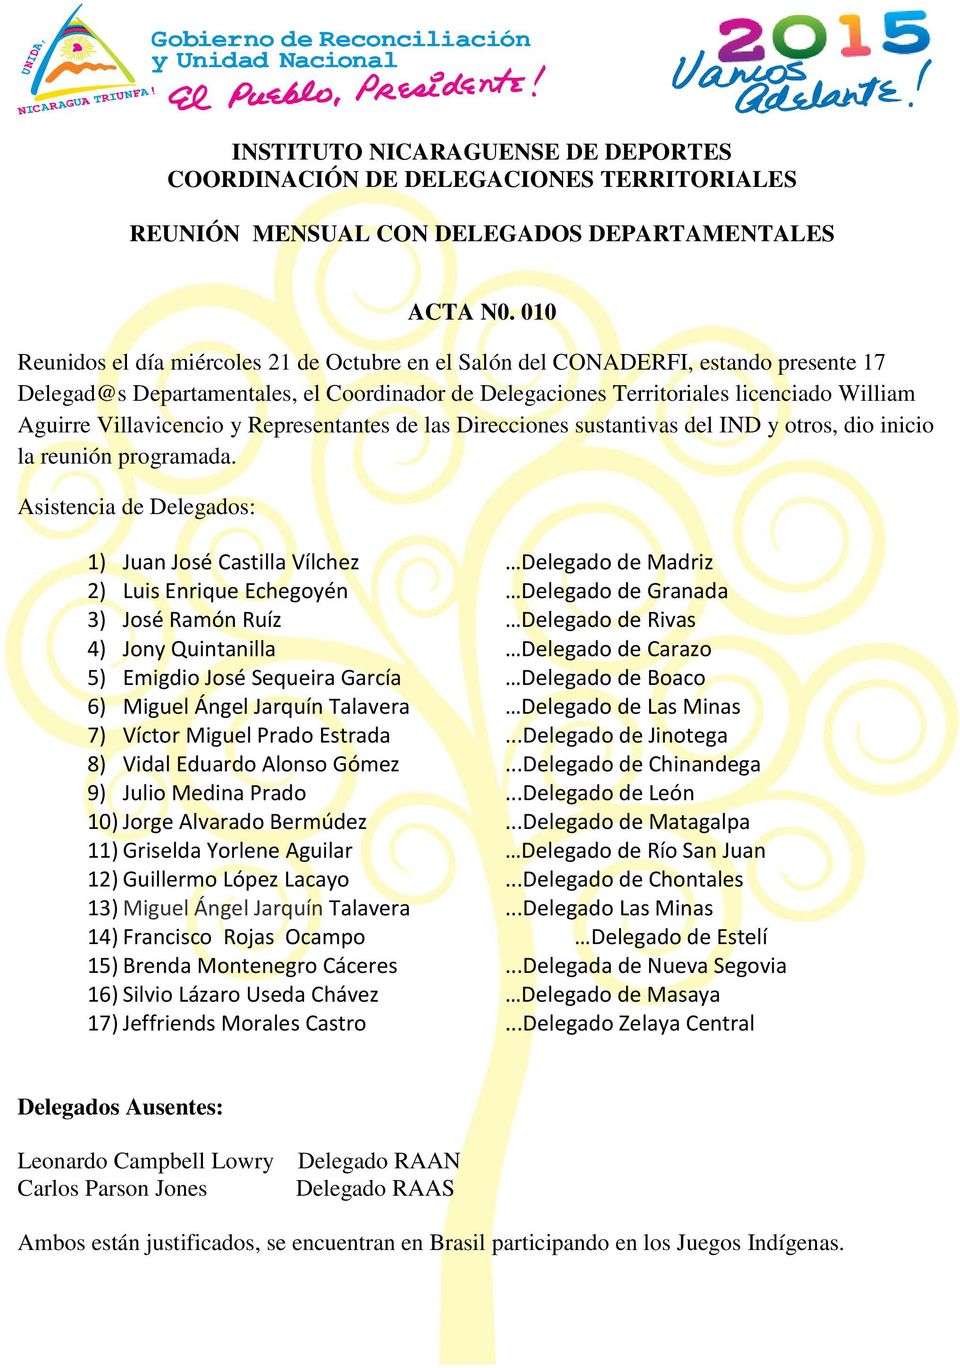 Villavicencio y Representantes de las Direcciones sustantivas del IND y otros, dio inicio la reunión programada.